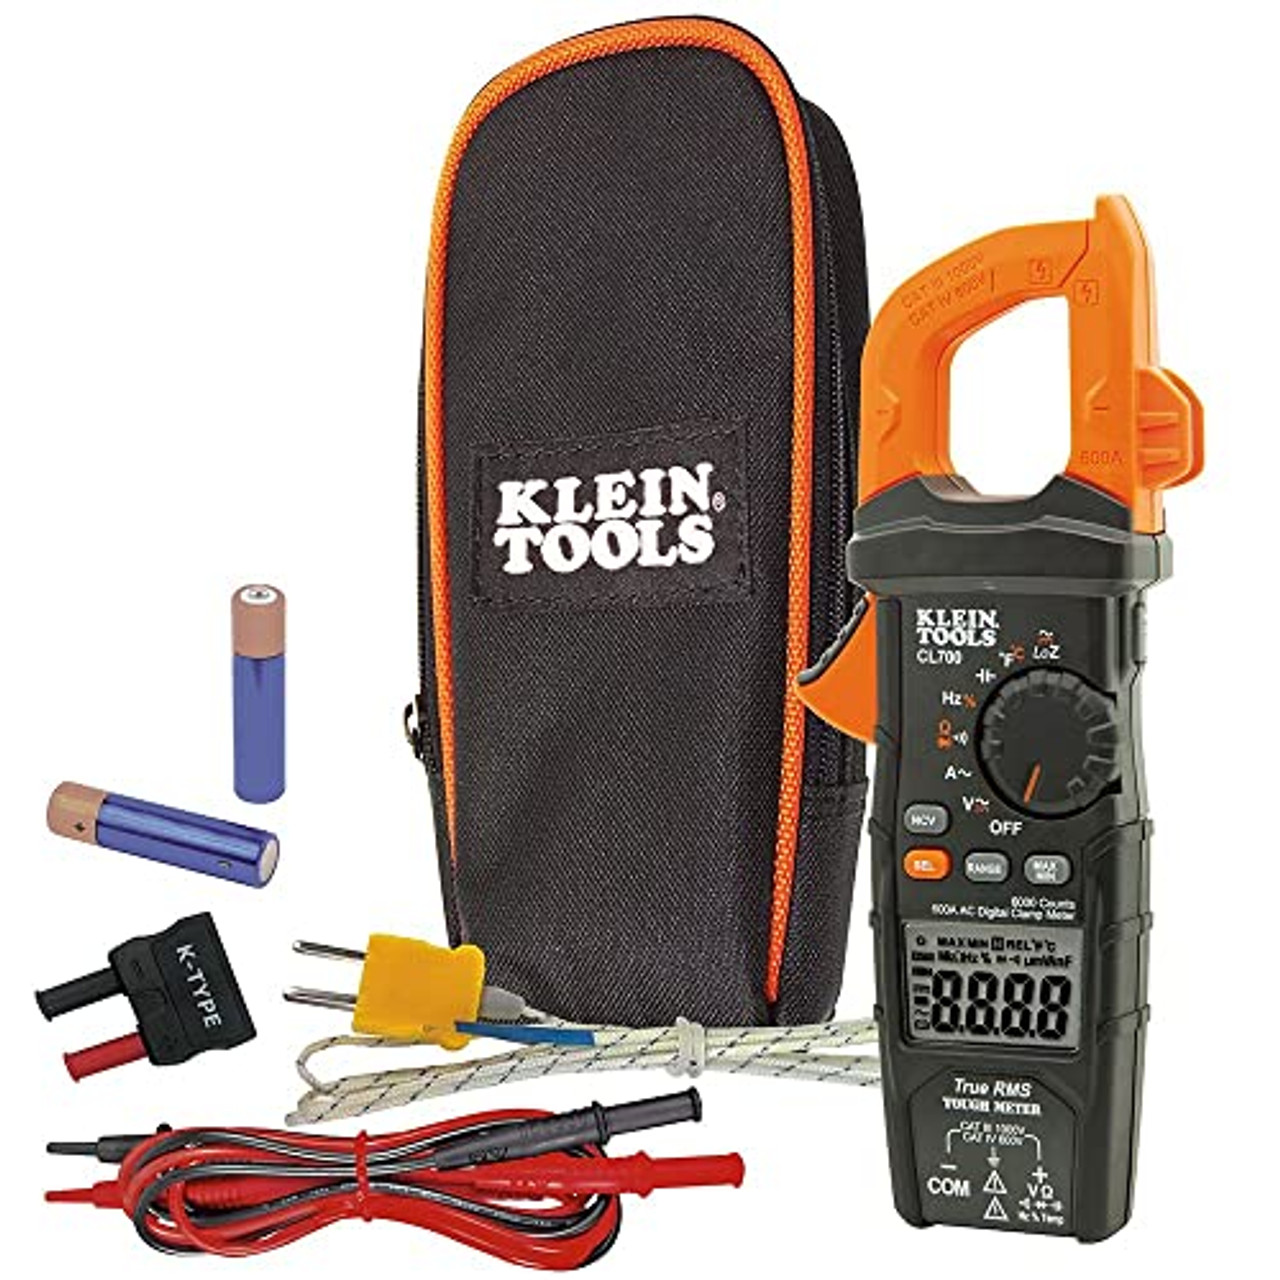 Klein Tools cl700 オートレンジデジタルクランプメーター、TRMS 600amp、AC/DC ボルト JB Tools